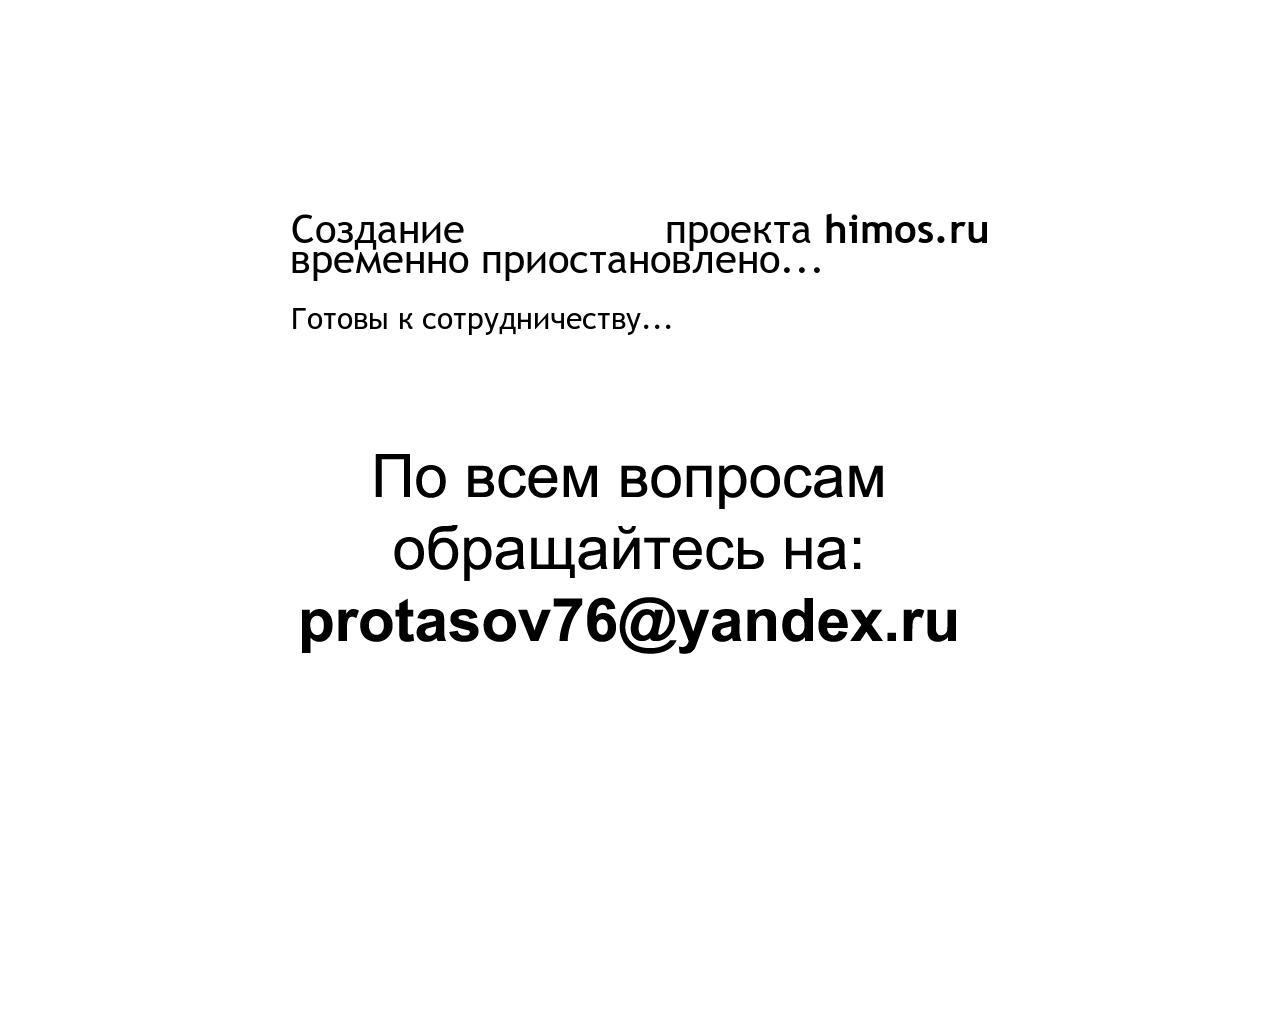 Изображение сайта himos.ru в разрешении 1280x1024